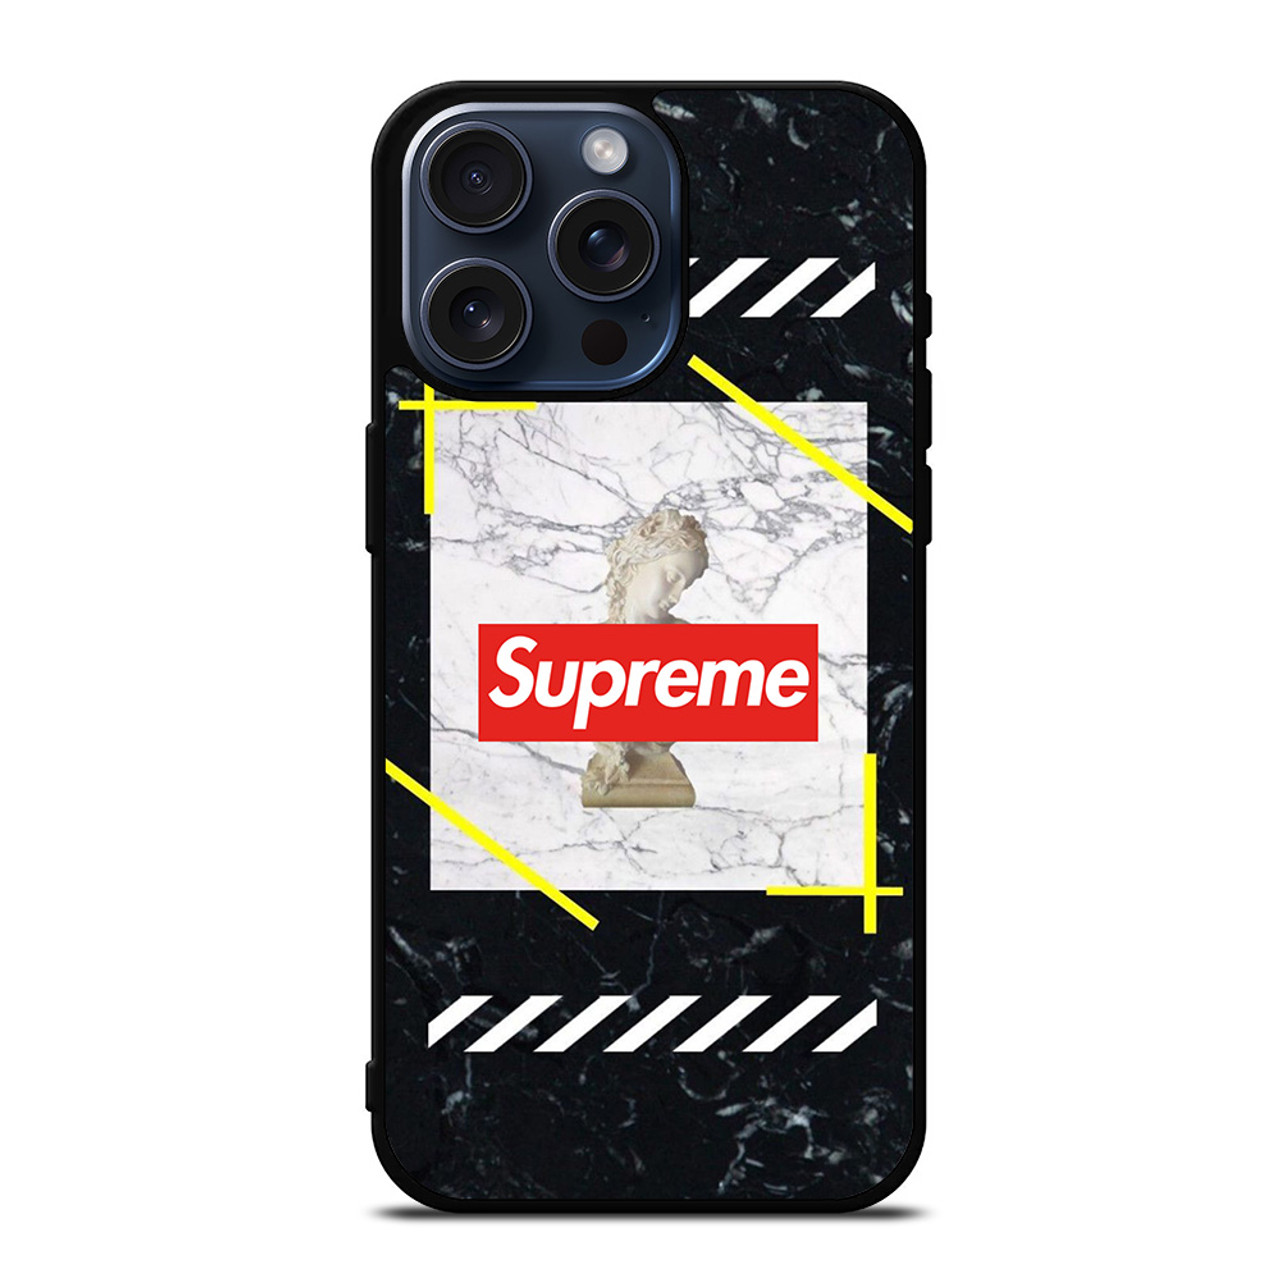 Supreme Fun iPhone 11 Pro Max Case